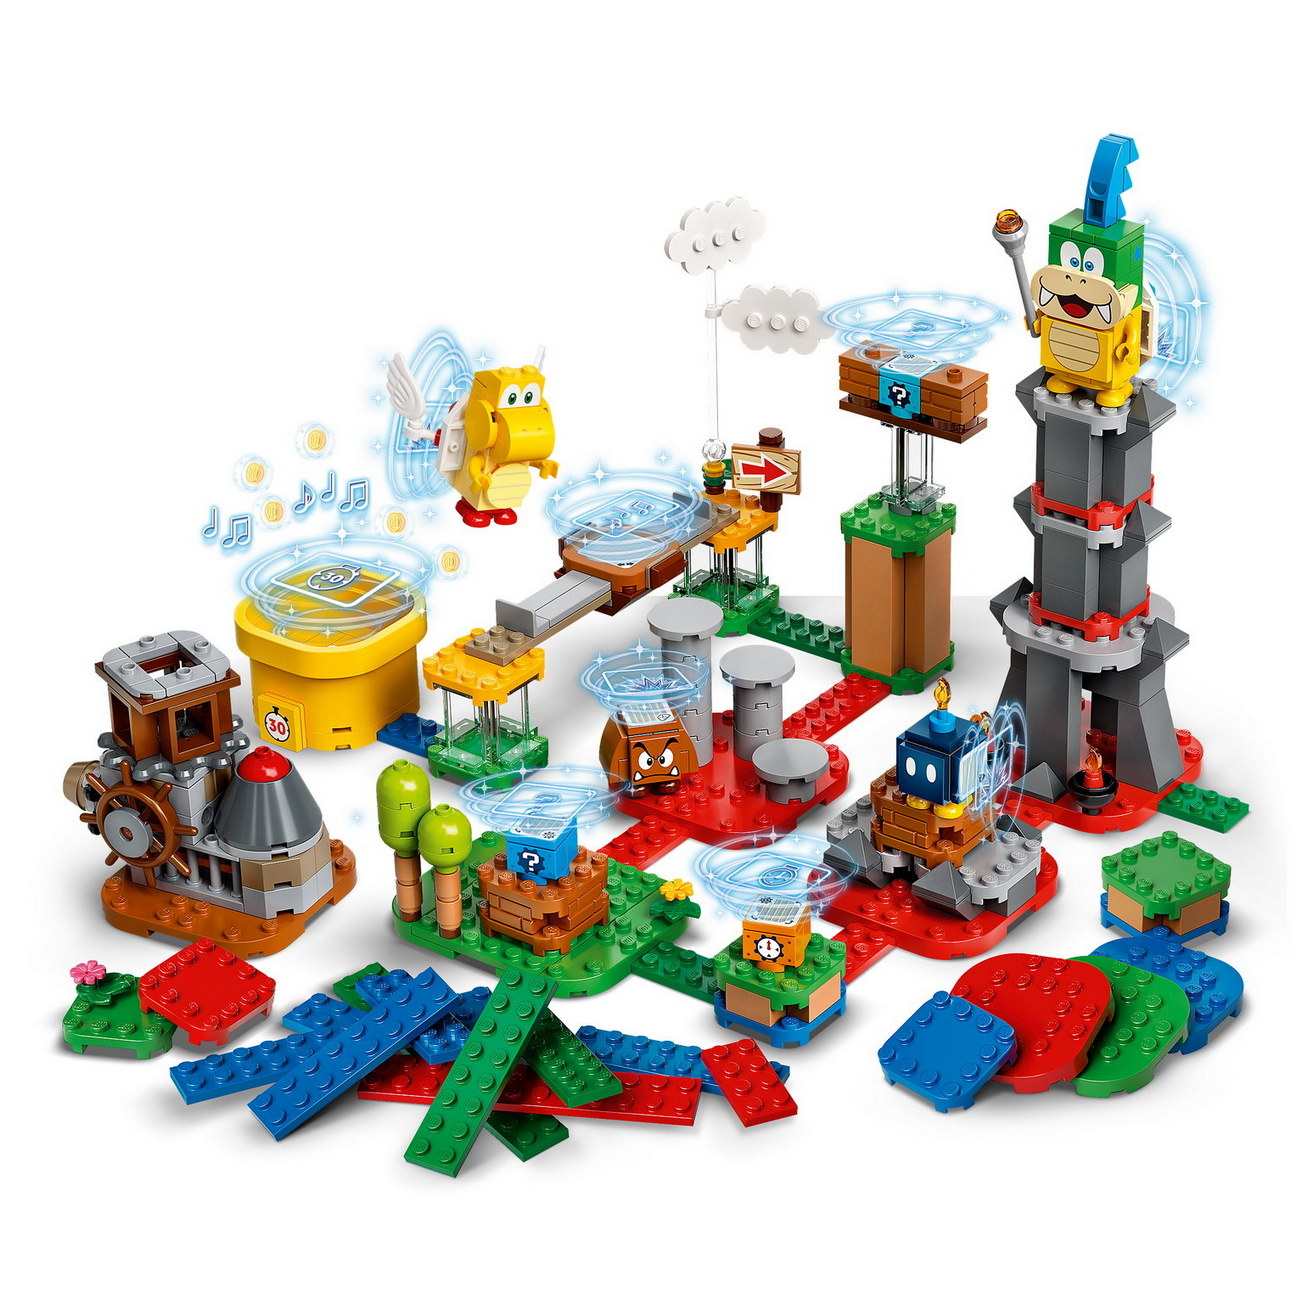 LEGO Super Mario 71380 - Baumeister-Set für eigene Abenteuer